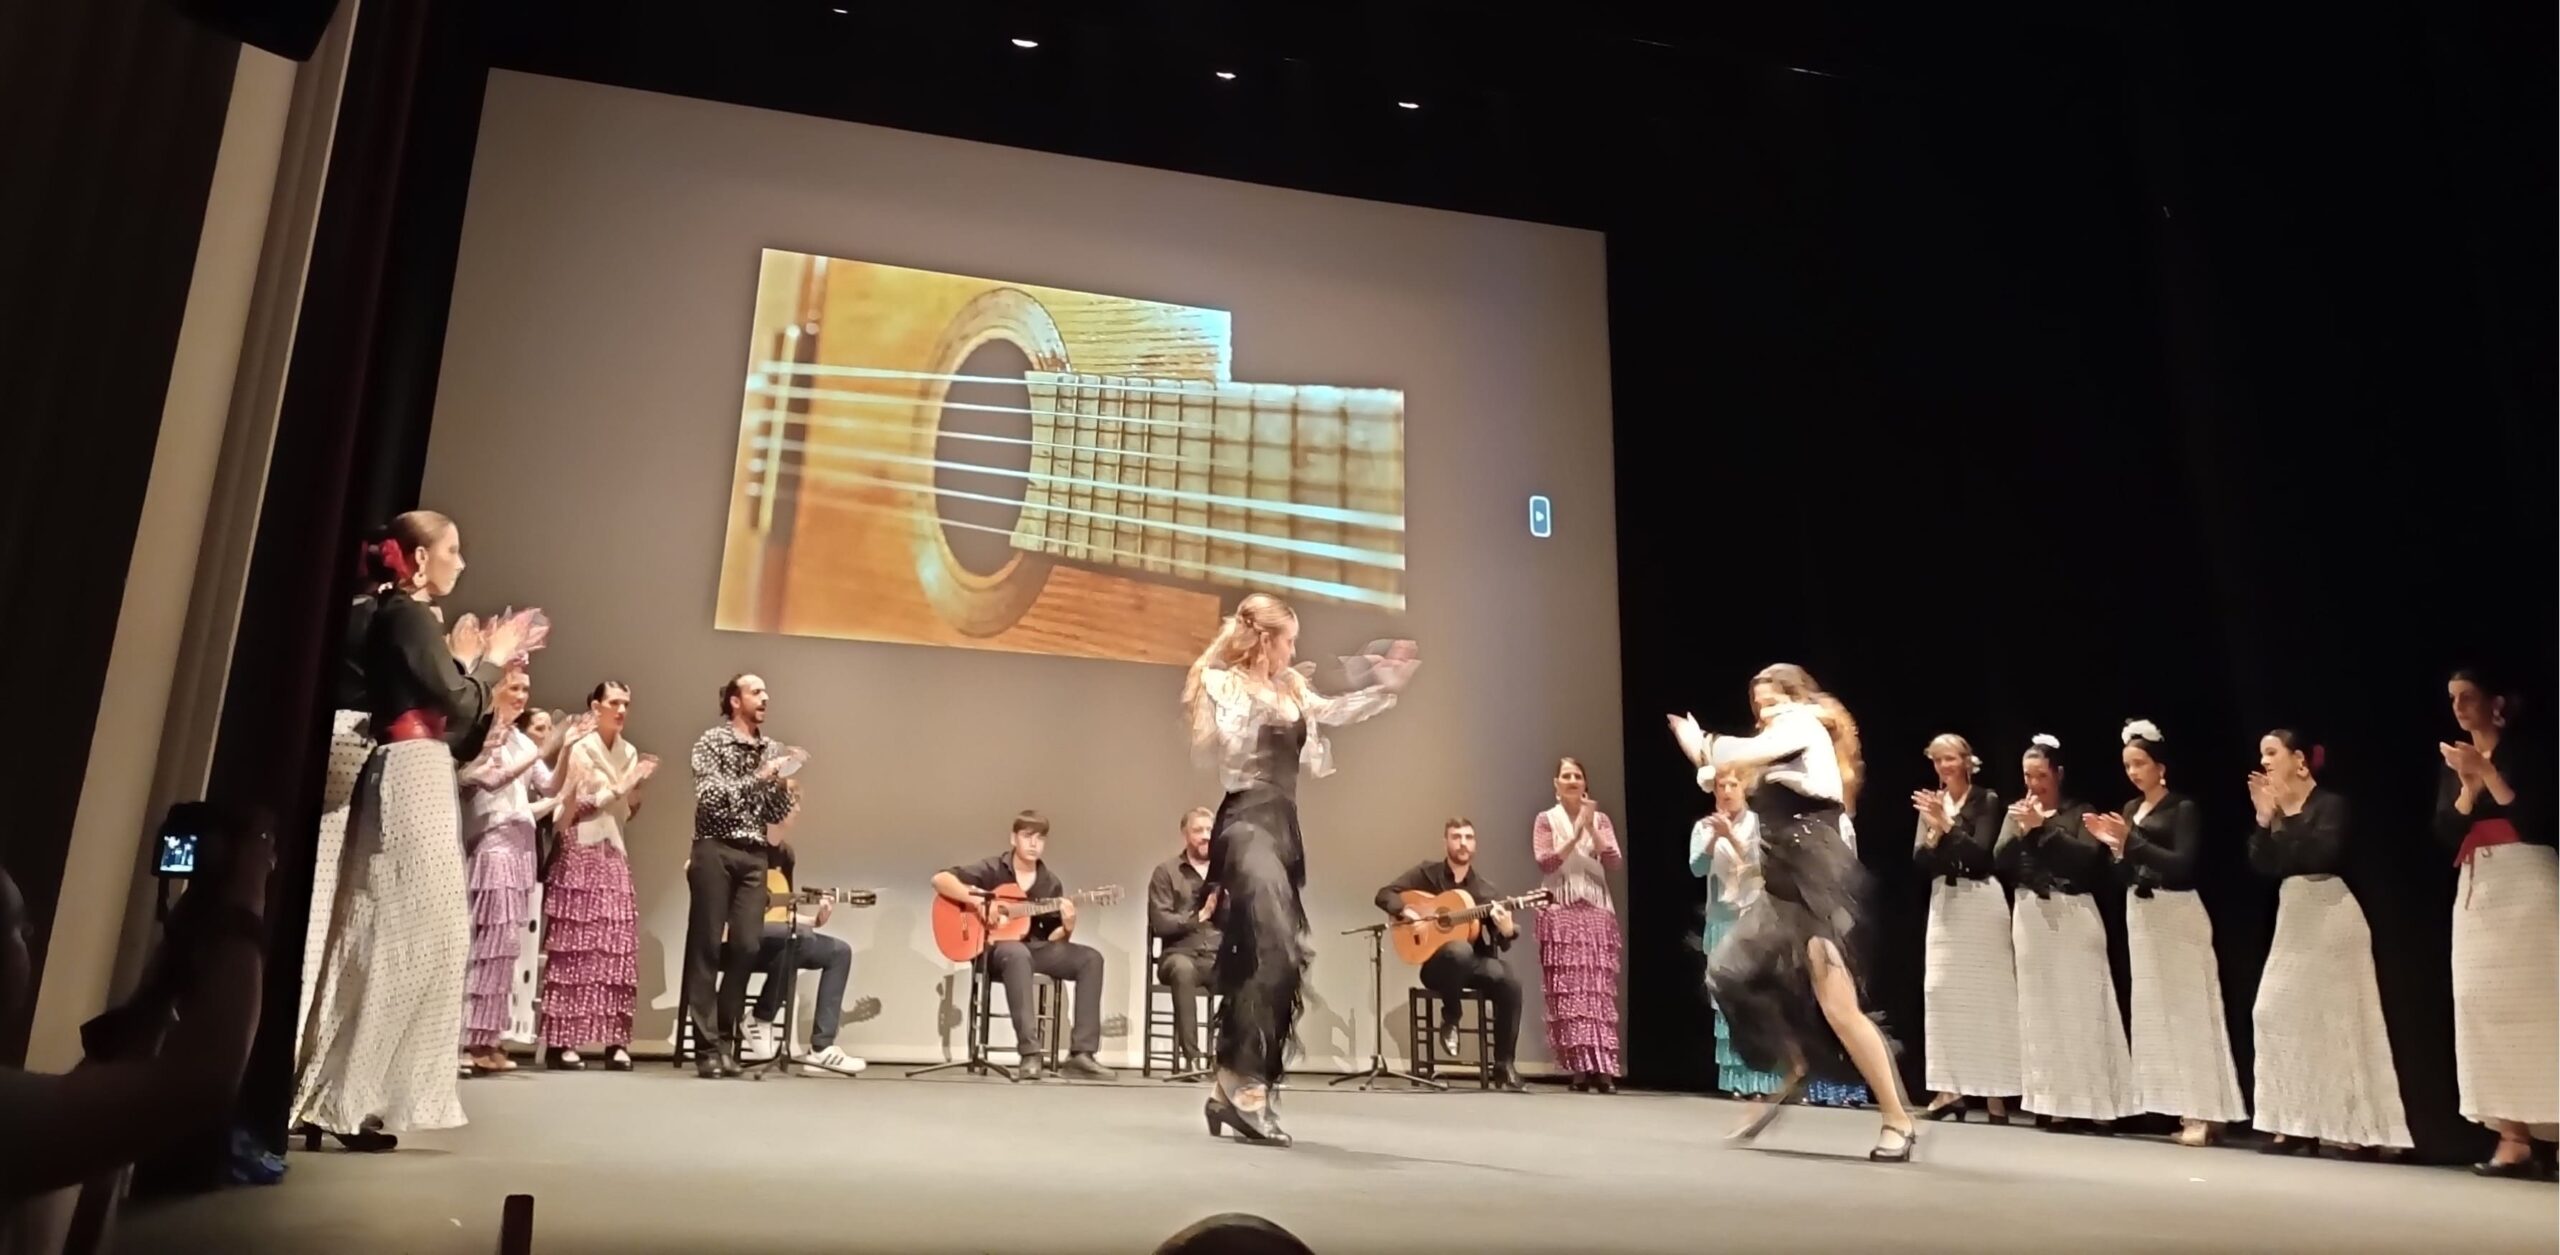 El festival solidario de flamenco ‘Ven y te contamos’ colabora con Fundación ANAR en Segovia